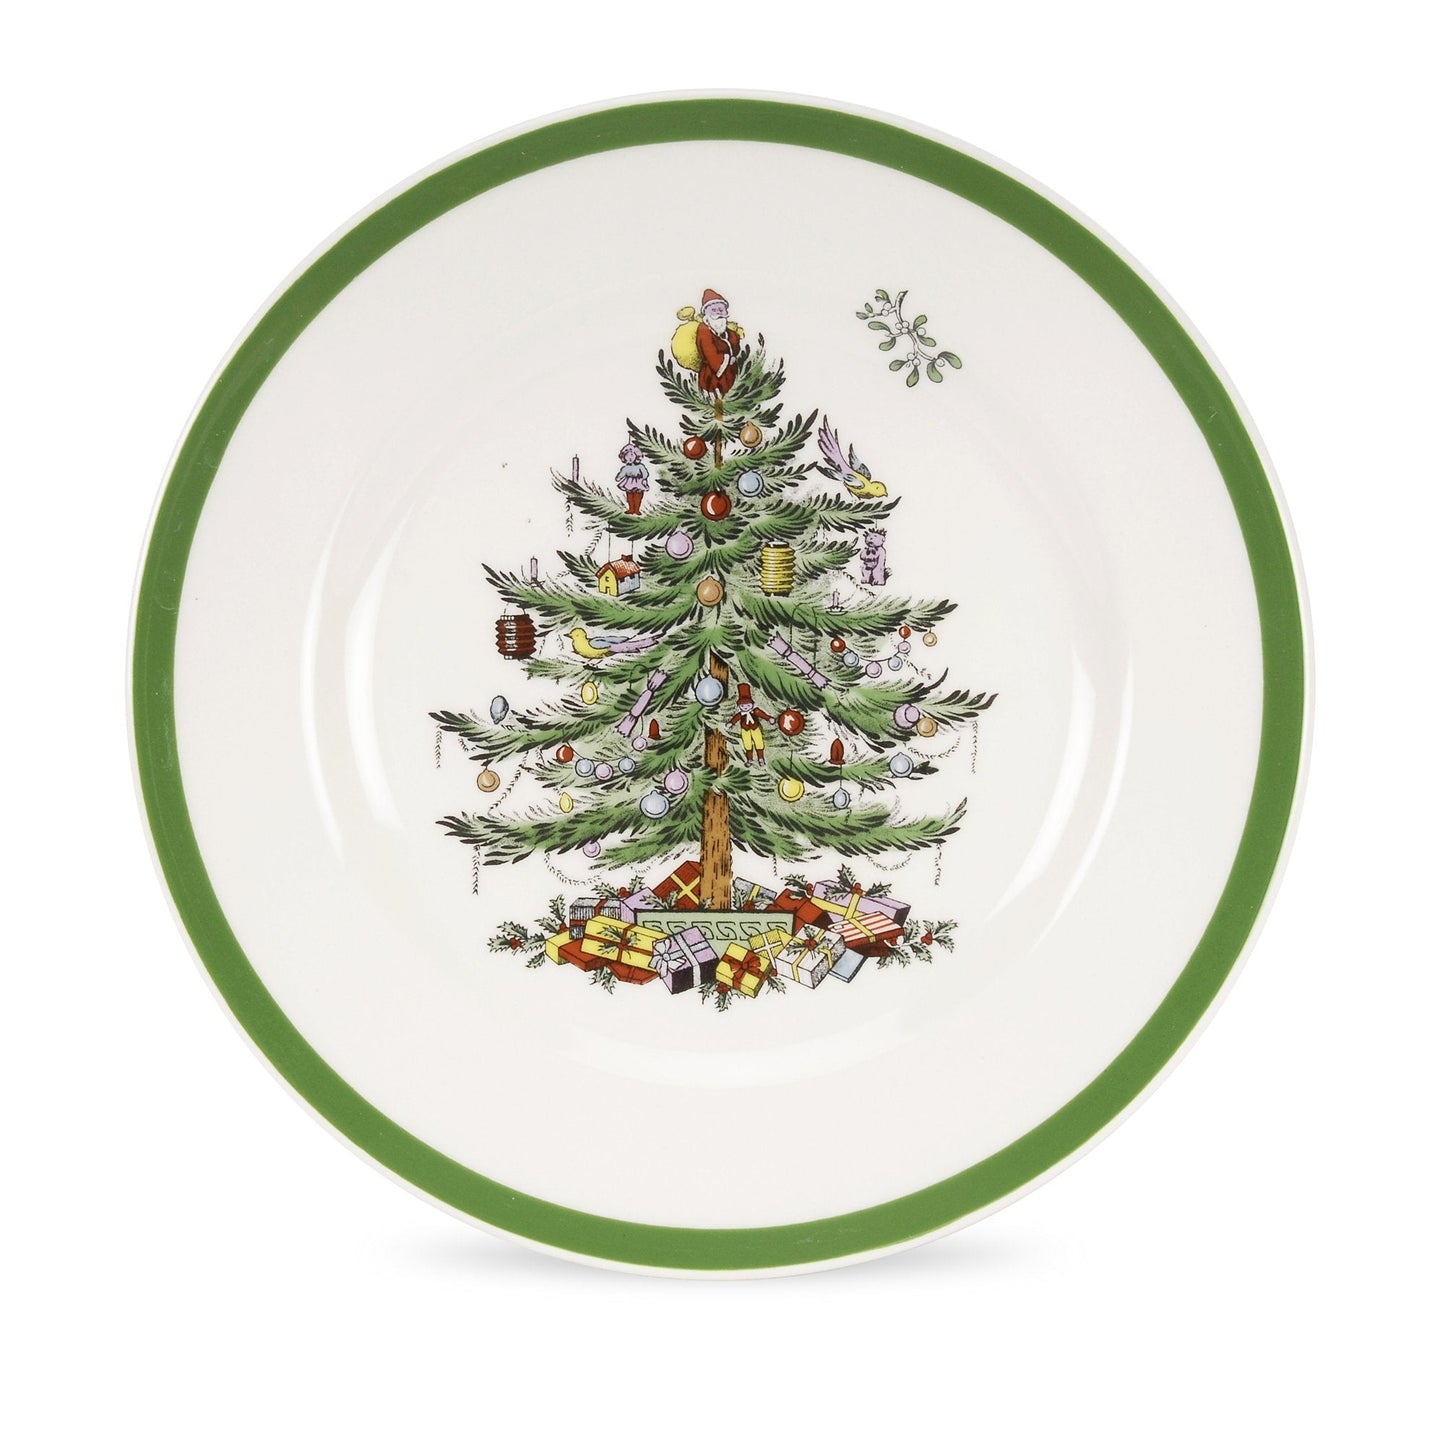 Spode Christmas Tree Set of 8 Salad Plates - Shoppedeals